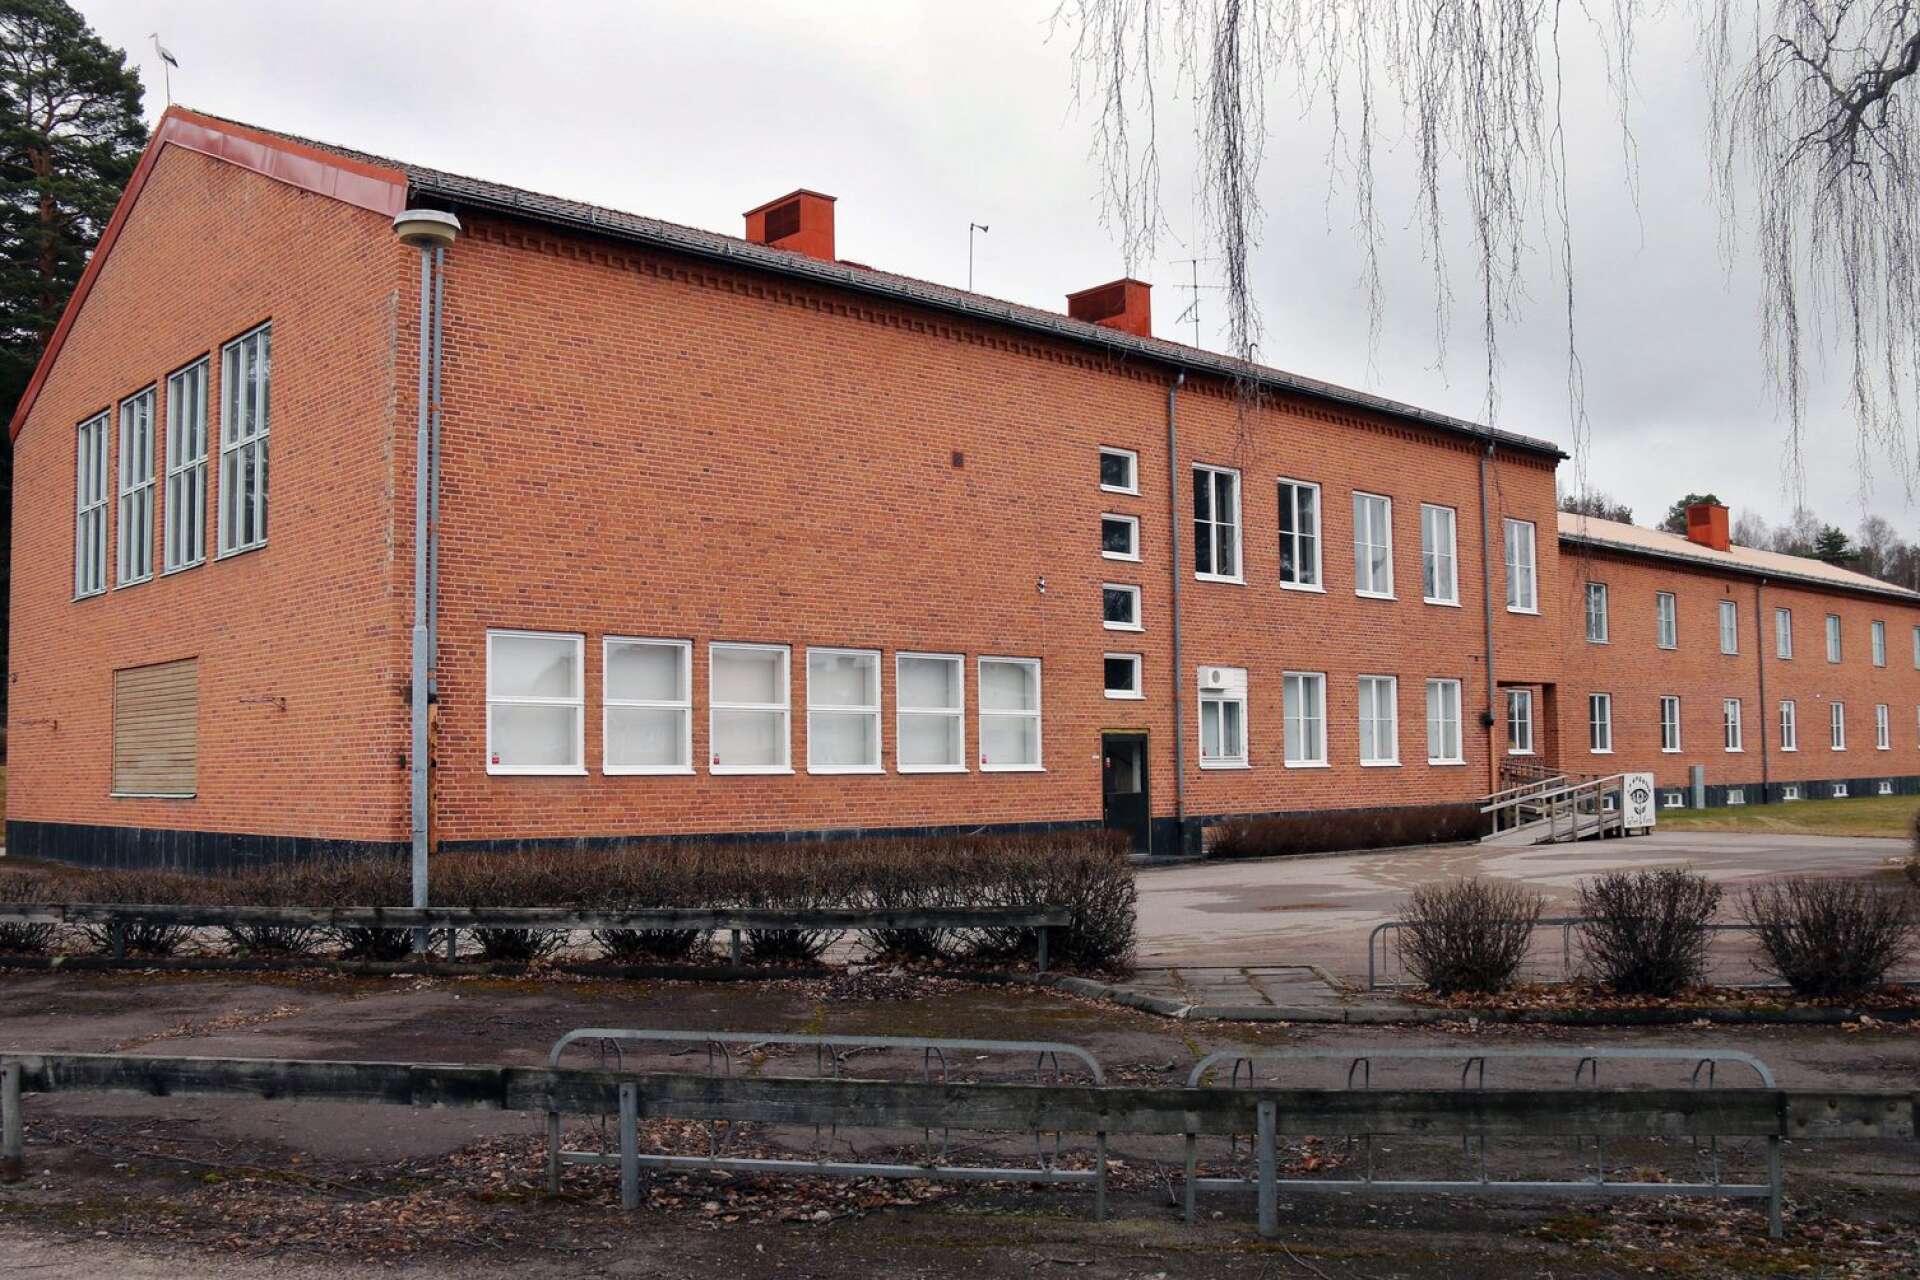 Norra skolan var mellanstadium en gång i tiden och en av skolorna vars renoveringsbehov låg till grund för att bygga en enda större skolenhet.